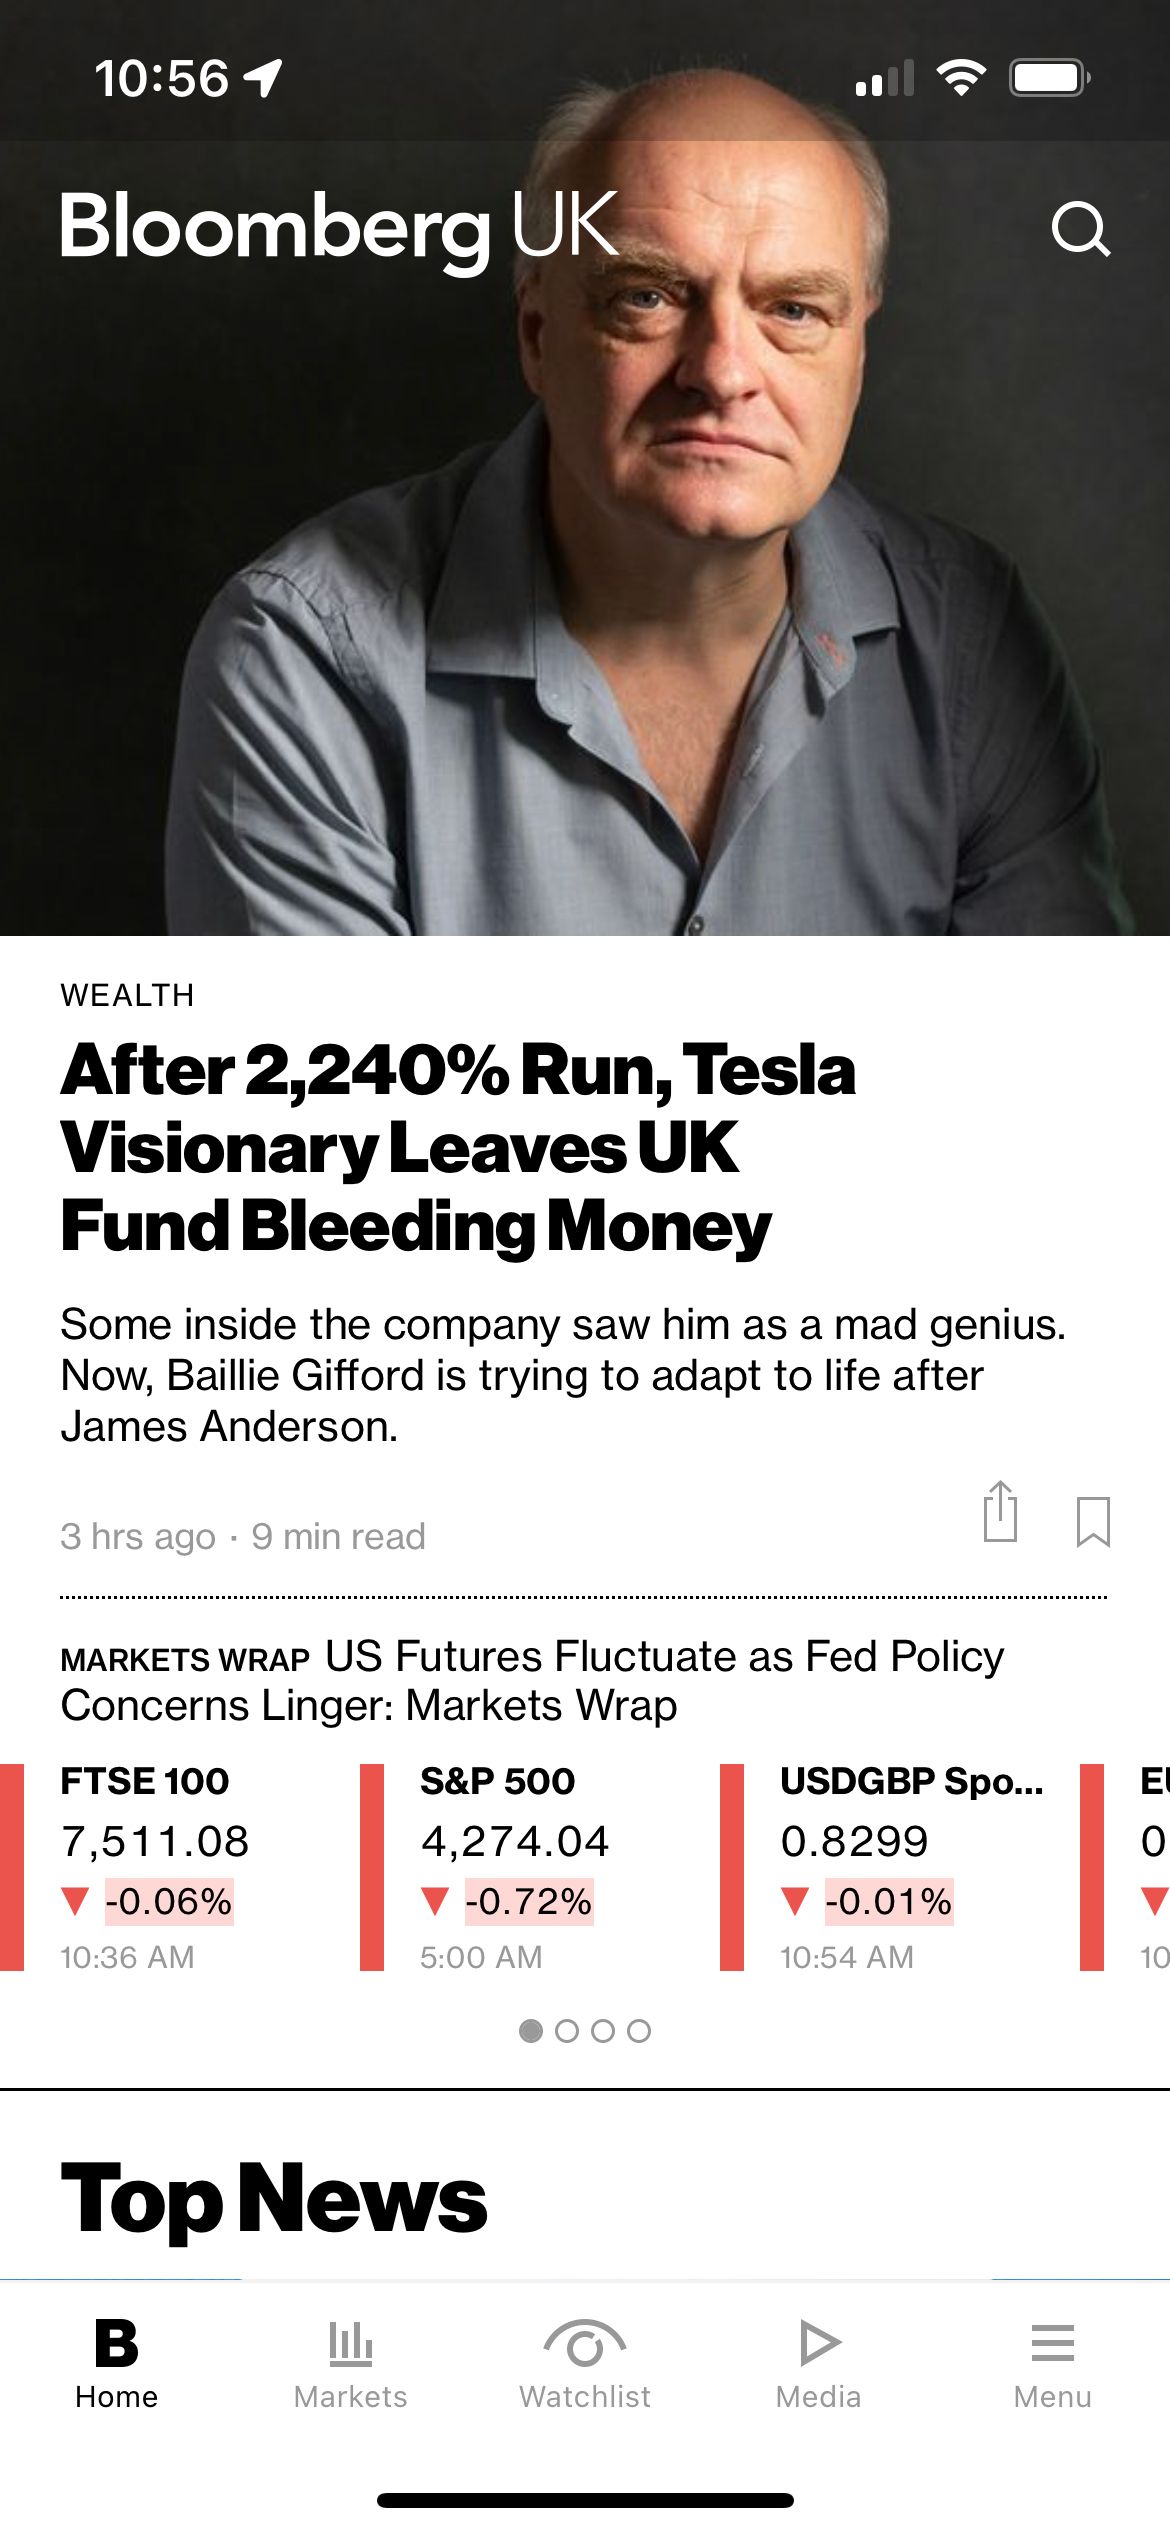 Bloomberg news tab